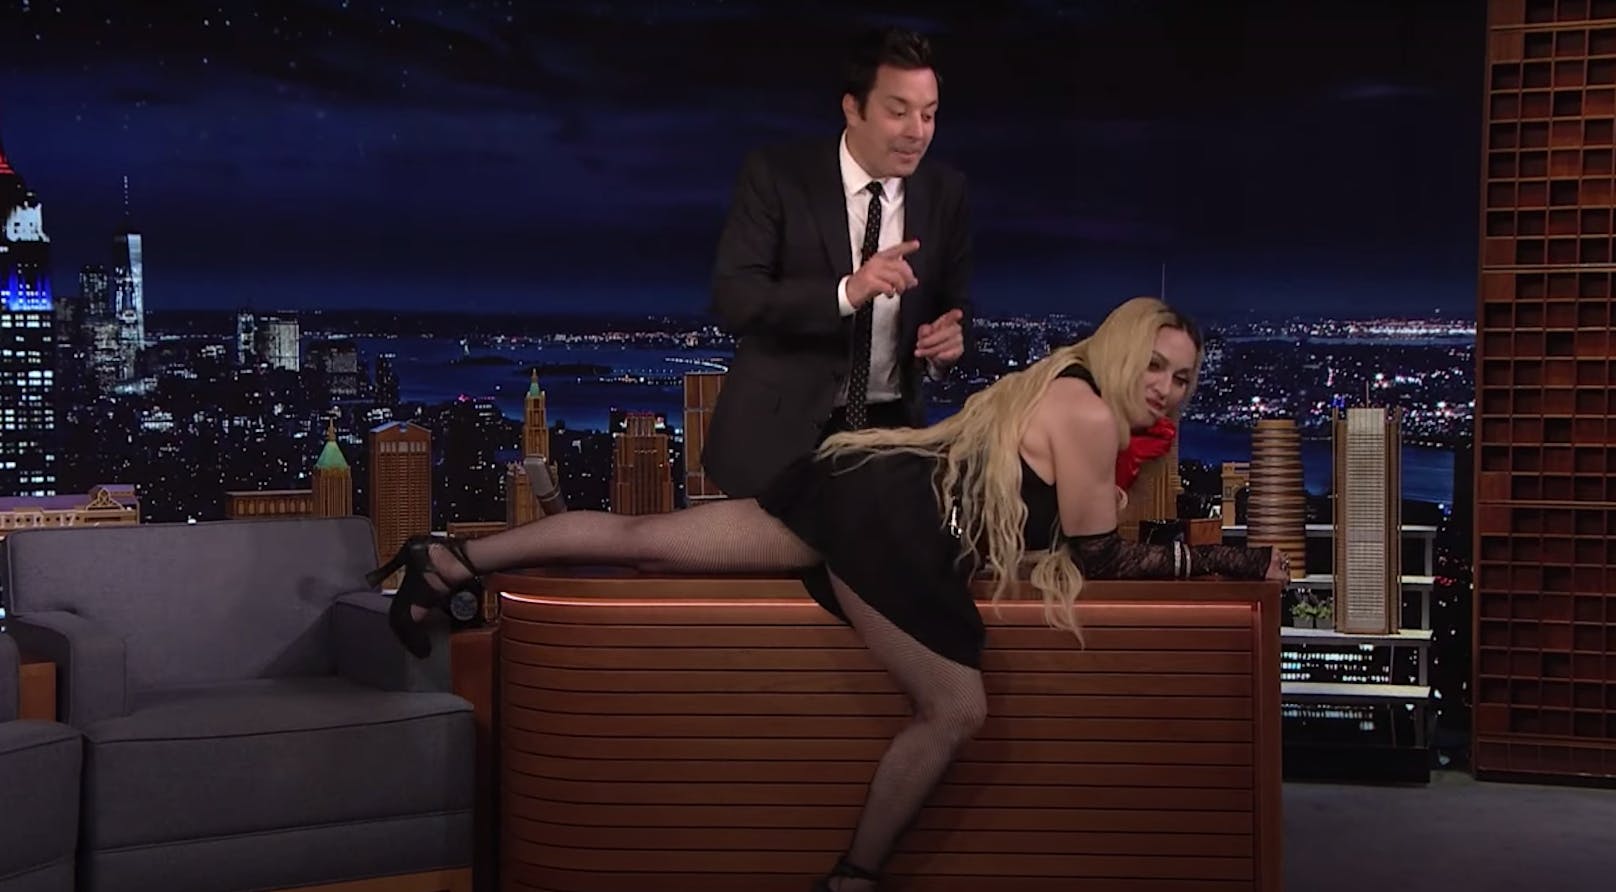 Da war sogar TV-Profi Jimmy Fallon überfordert! Madonna sprang mitten in der "Tonight Show" auf seinen Schreibtisch des Moderators und rekelte sich dort ganz lasziv.